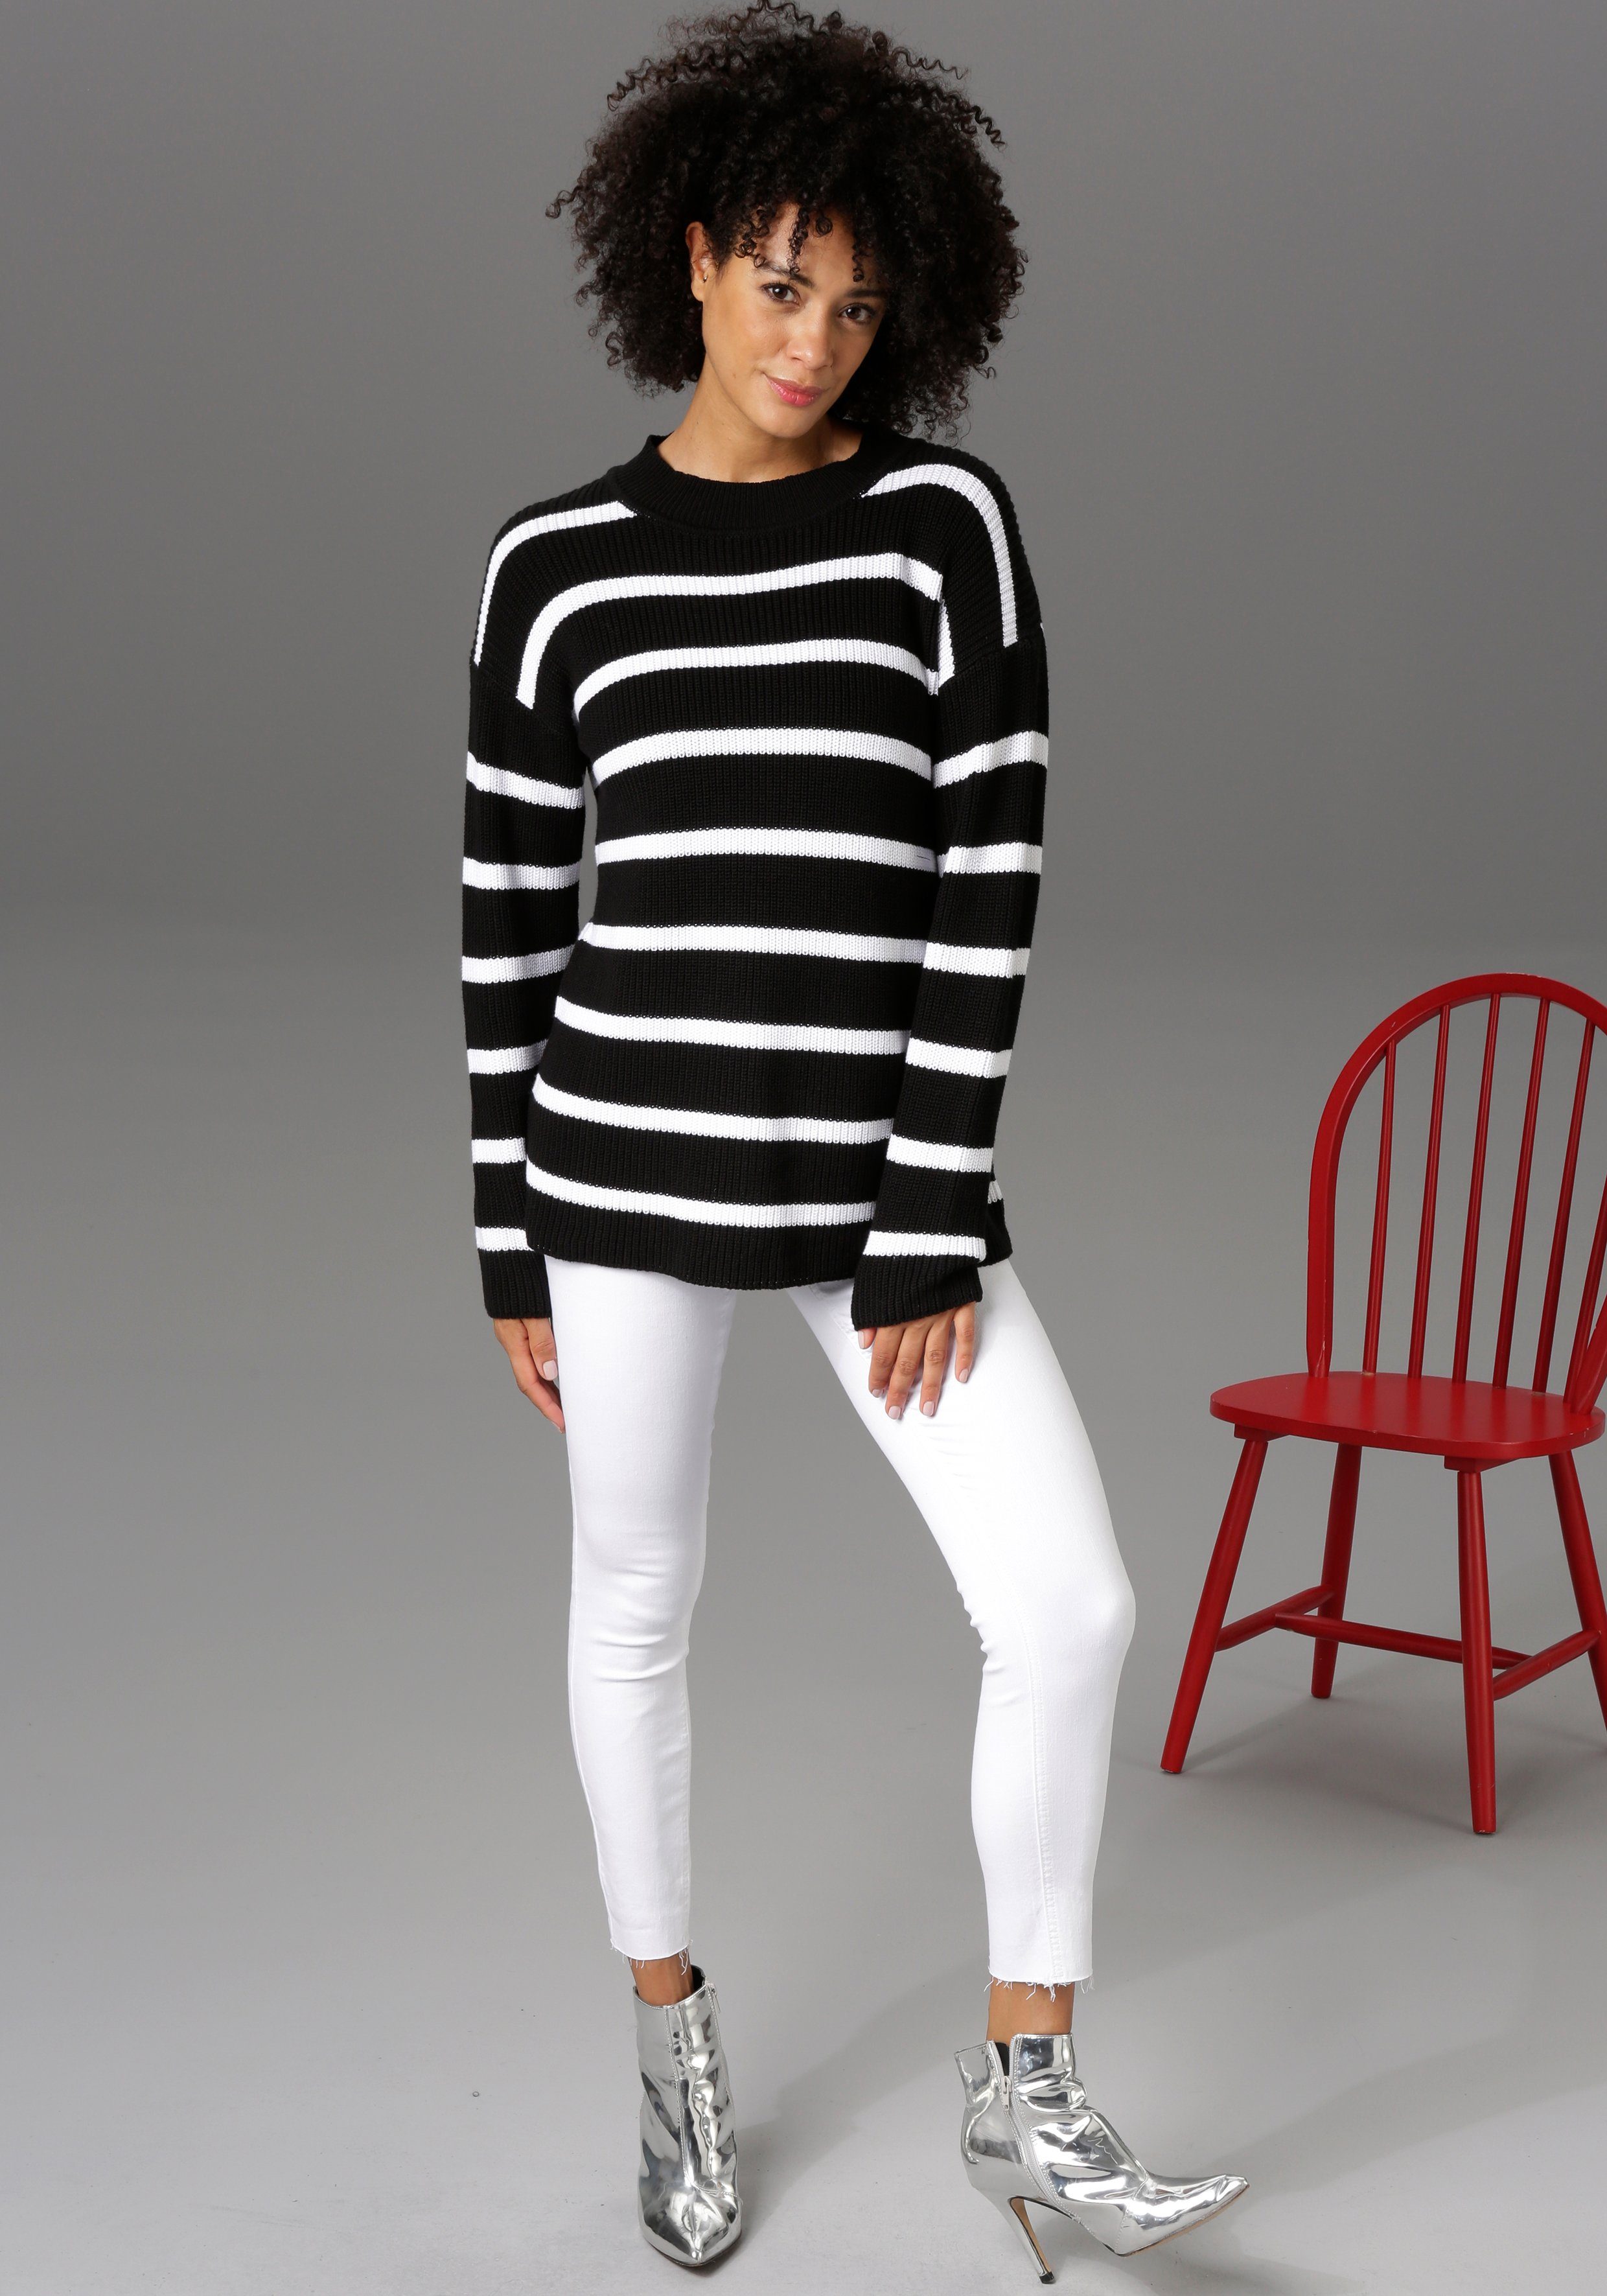 waist regular Skinny-fit-Jeans white Beinabschluss - CASUAL Aniston mit ausgefransten